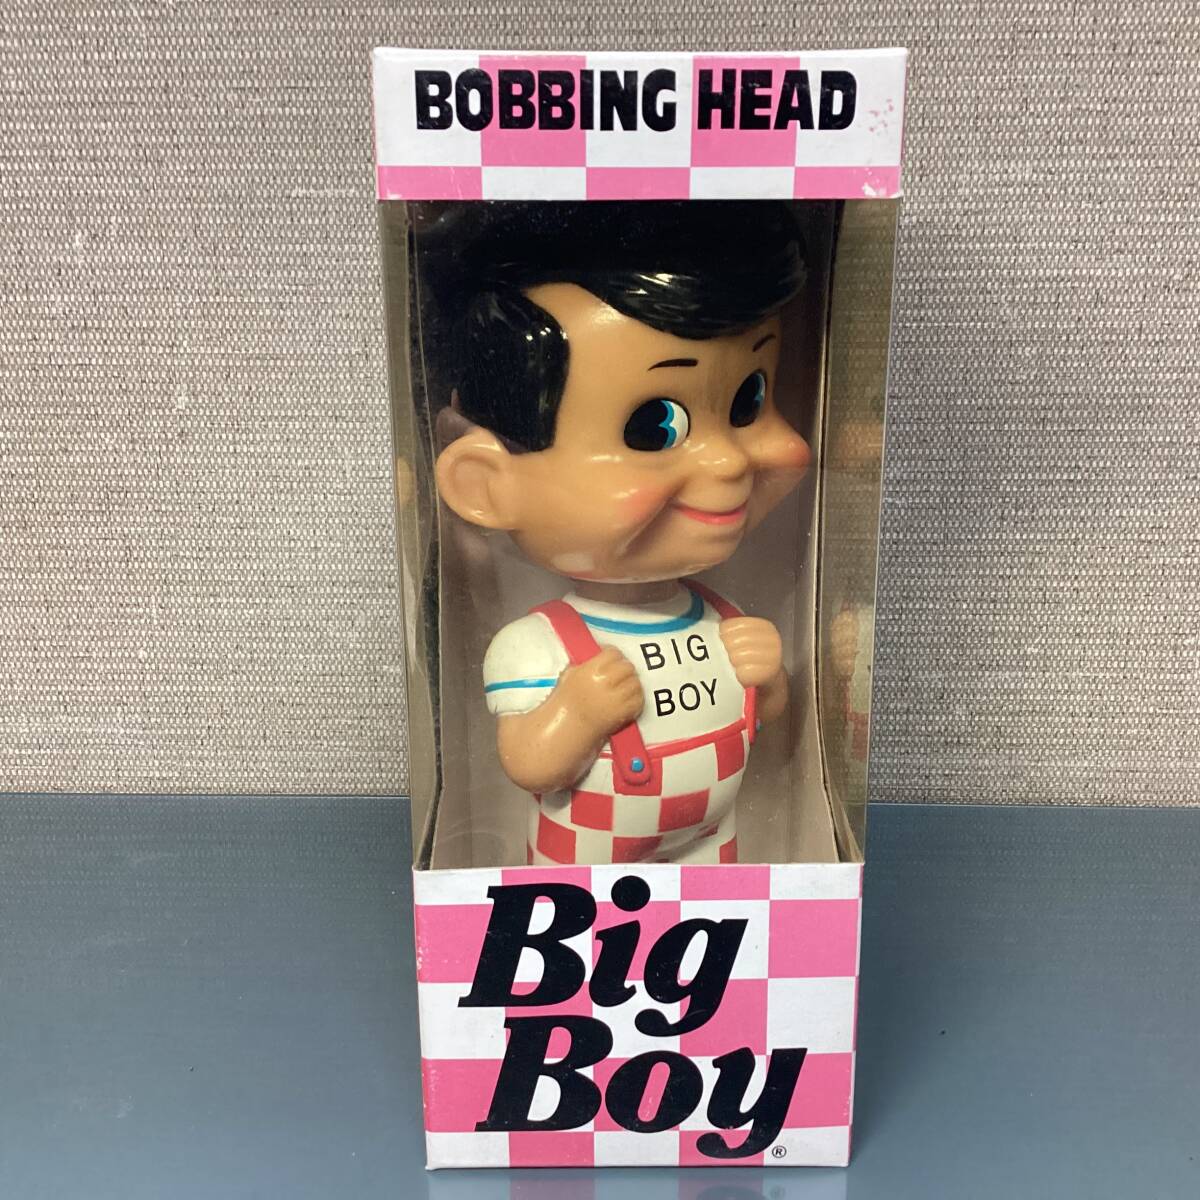 Funko ファンコ BOBBING HEAD Big Boy ビッグボーイ フィギュア 首ふり人形 ボビングヘッドの画像1